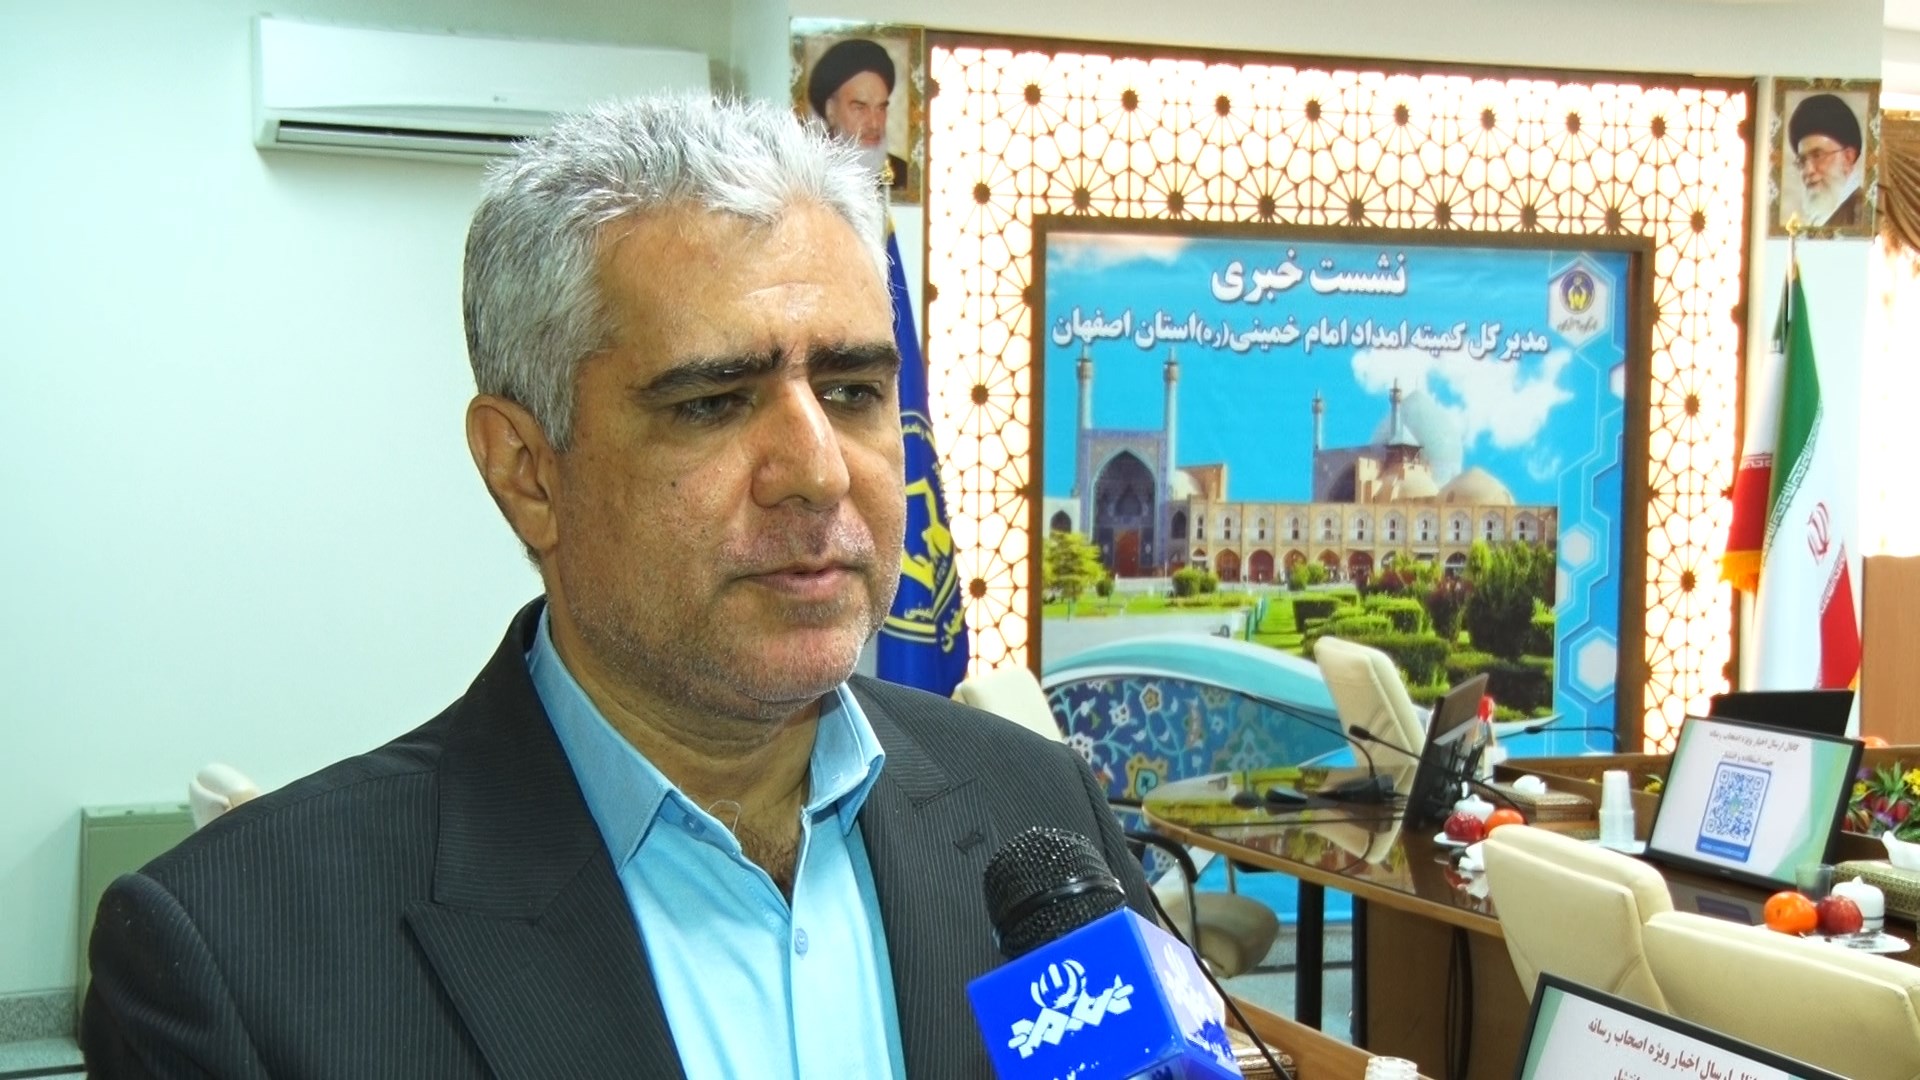 راه اندازی ۷۰۰ پایگاه نیکوکاری در آستانه سال جدید در استان اصفهان